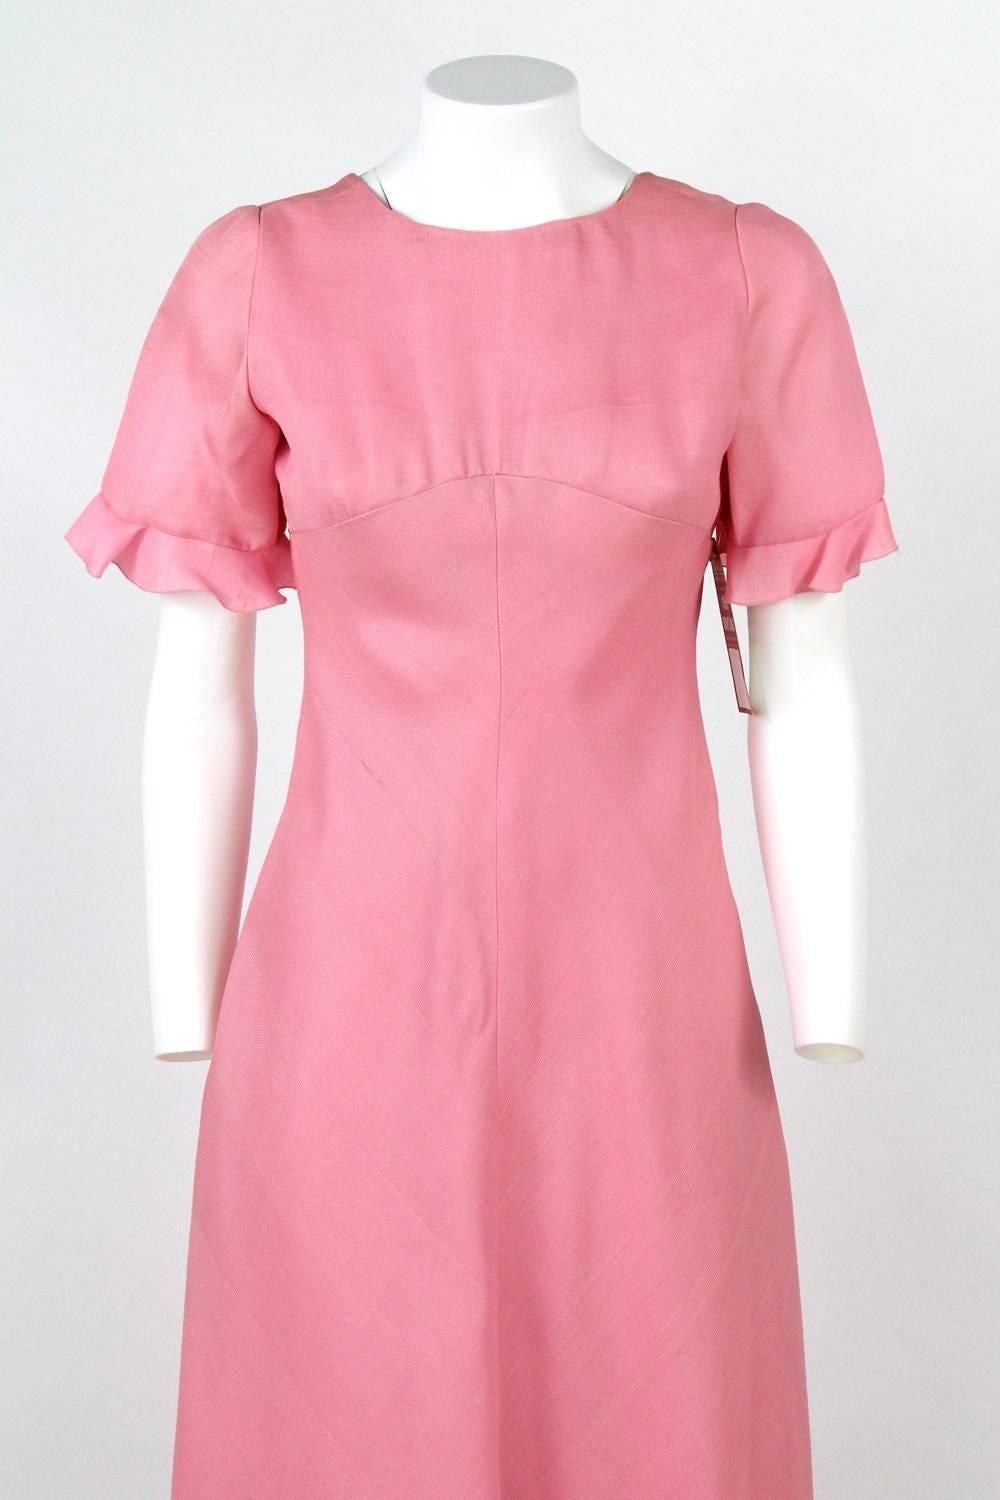 1970s Stop Senes Pink Dress Suit 1